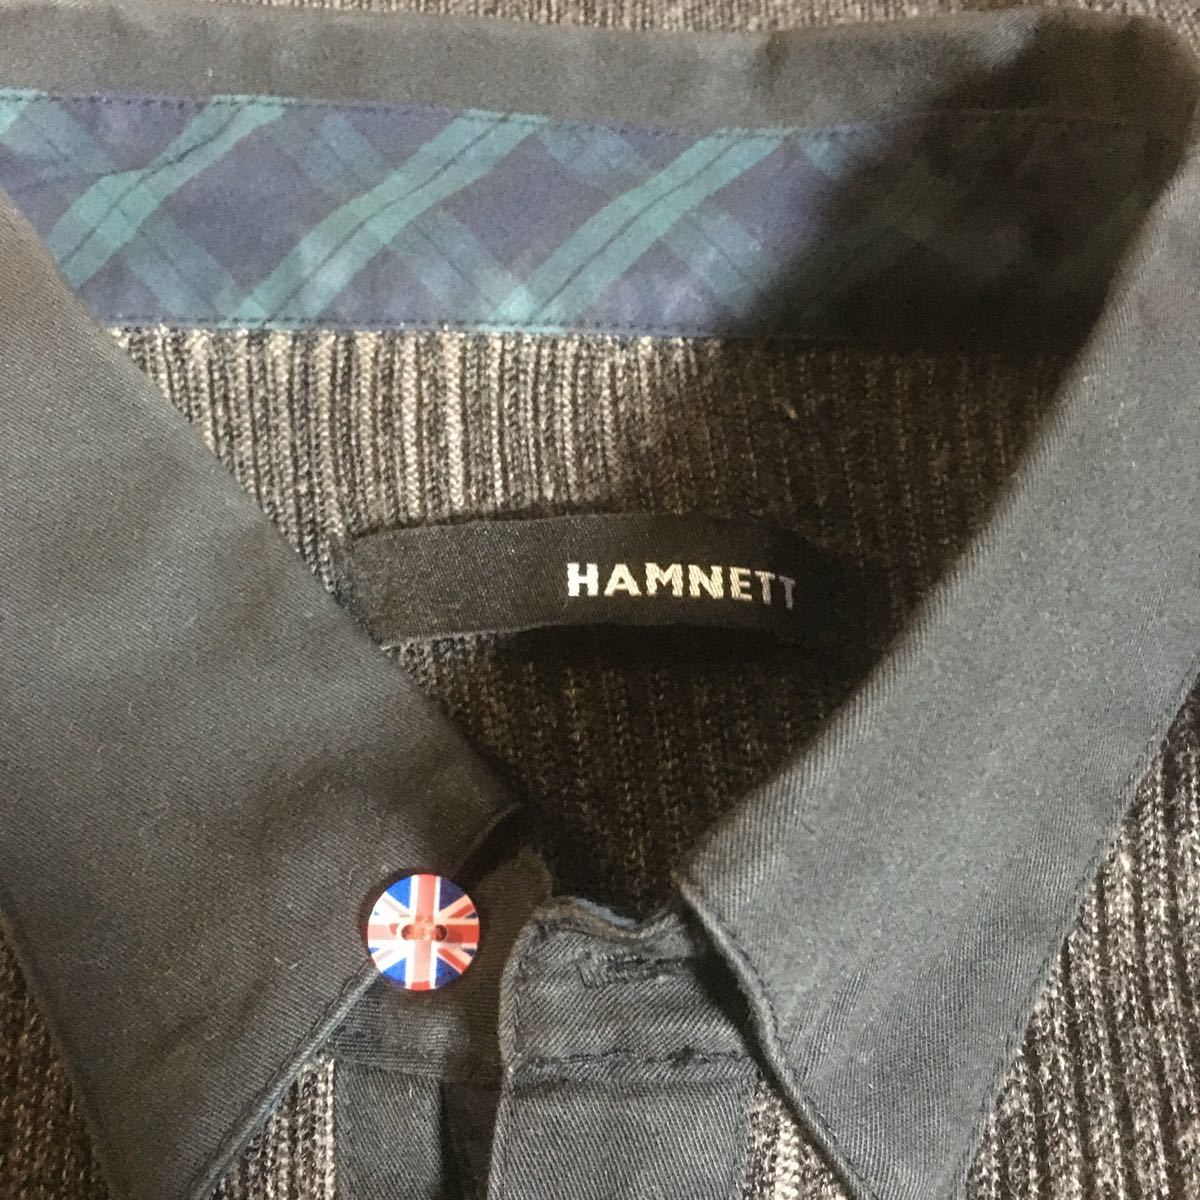 HAMNETT вязаный рубашка размер M